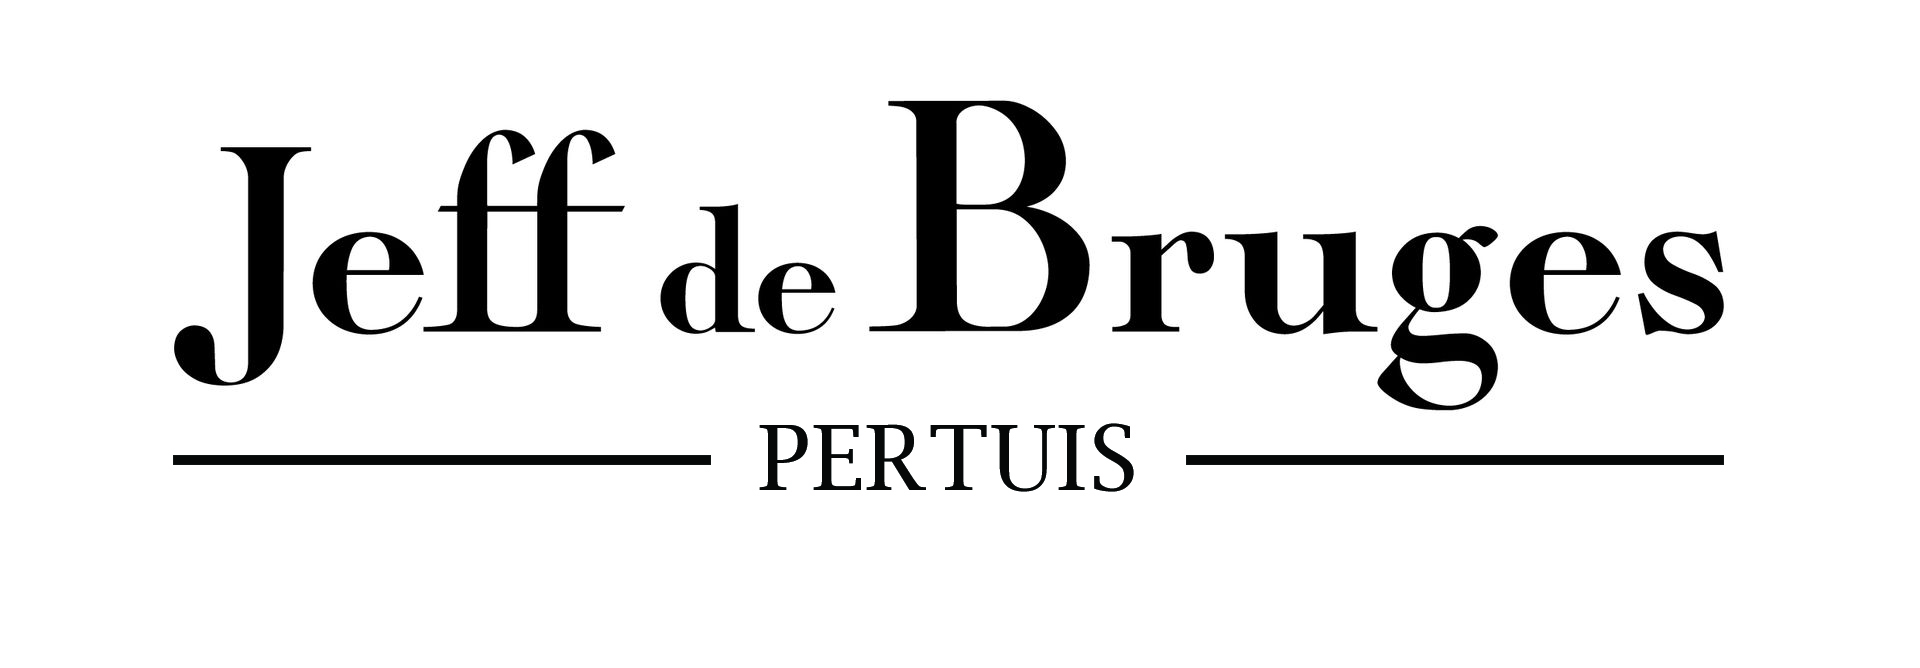 Jeff de Bruges Logo 01